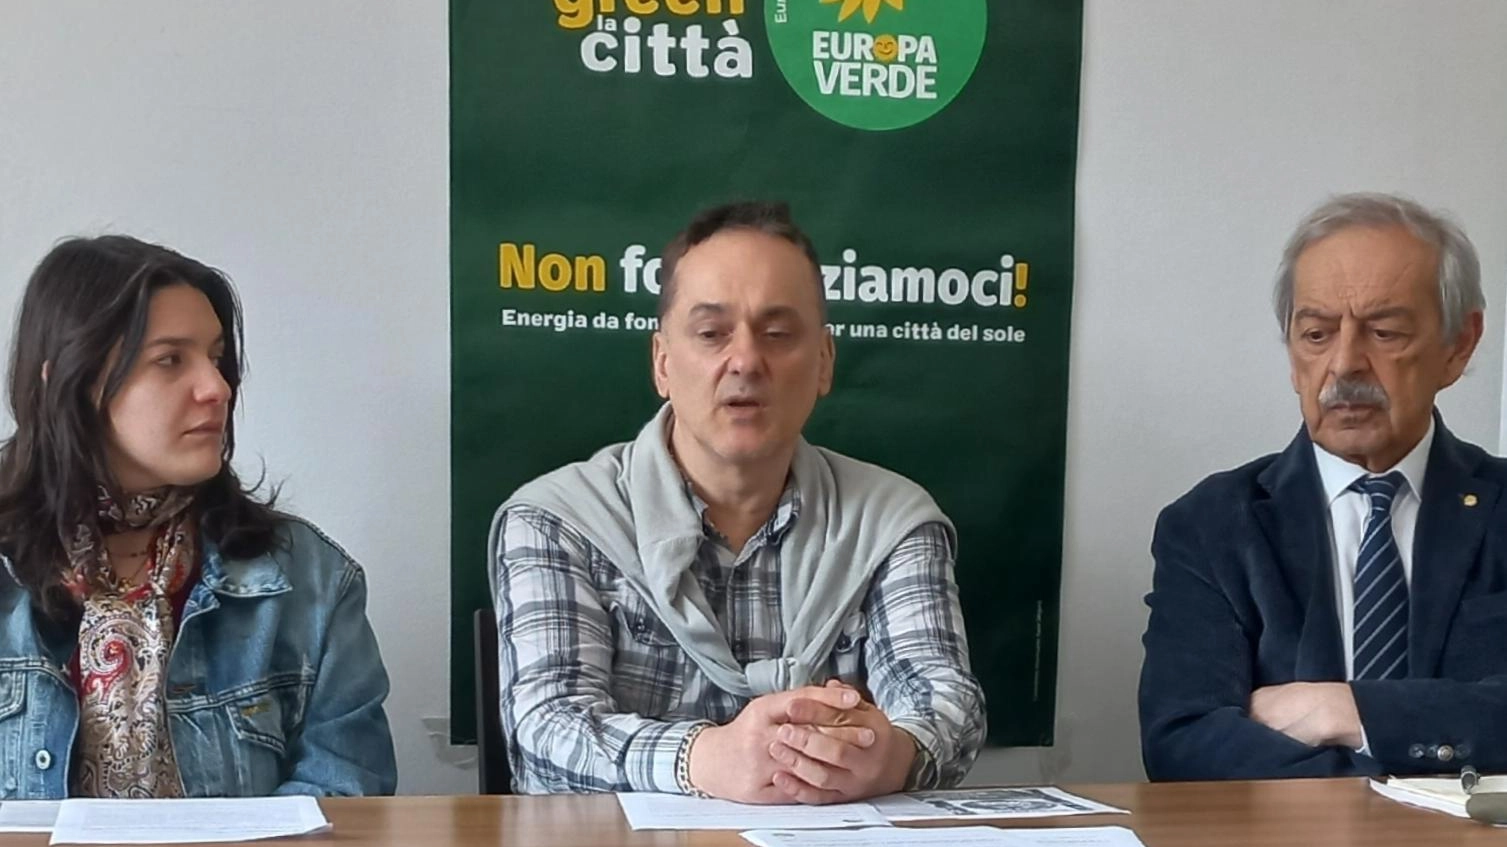 Europa Verde sostiene Braga: "Abbiamo undici buoni motivi"